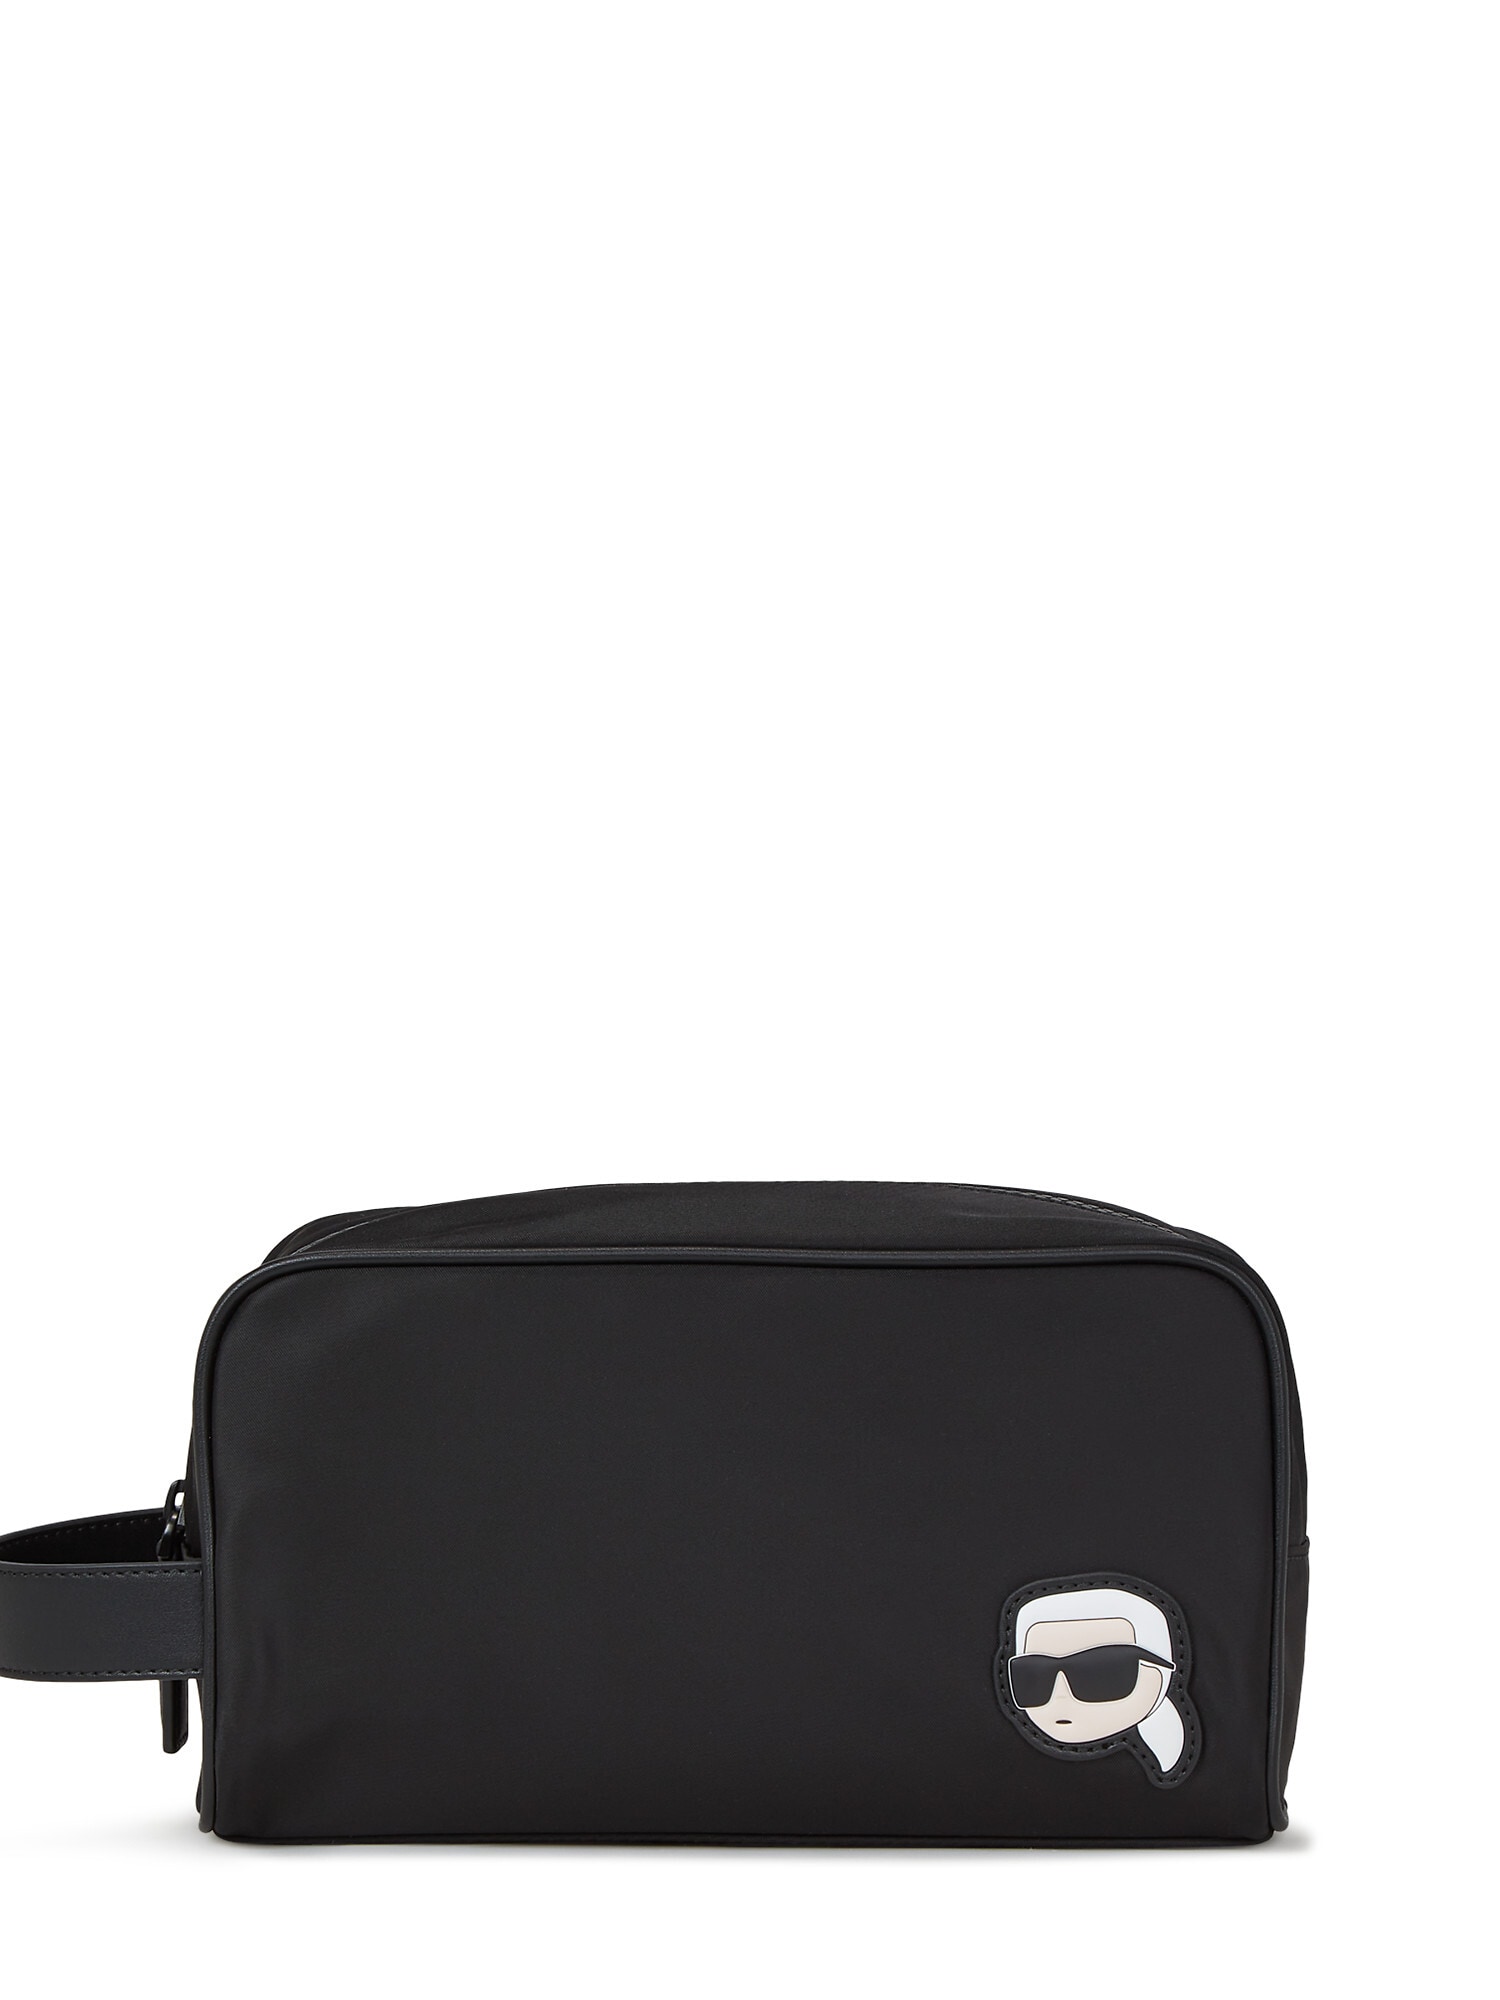 Karl Lagerfeld Tuoleto reikmenų krepšys juoda